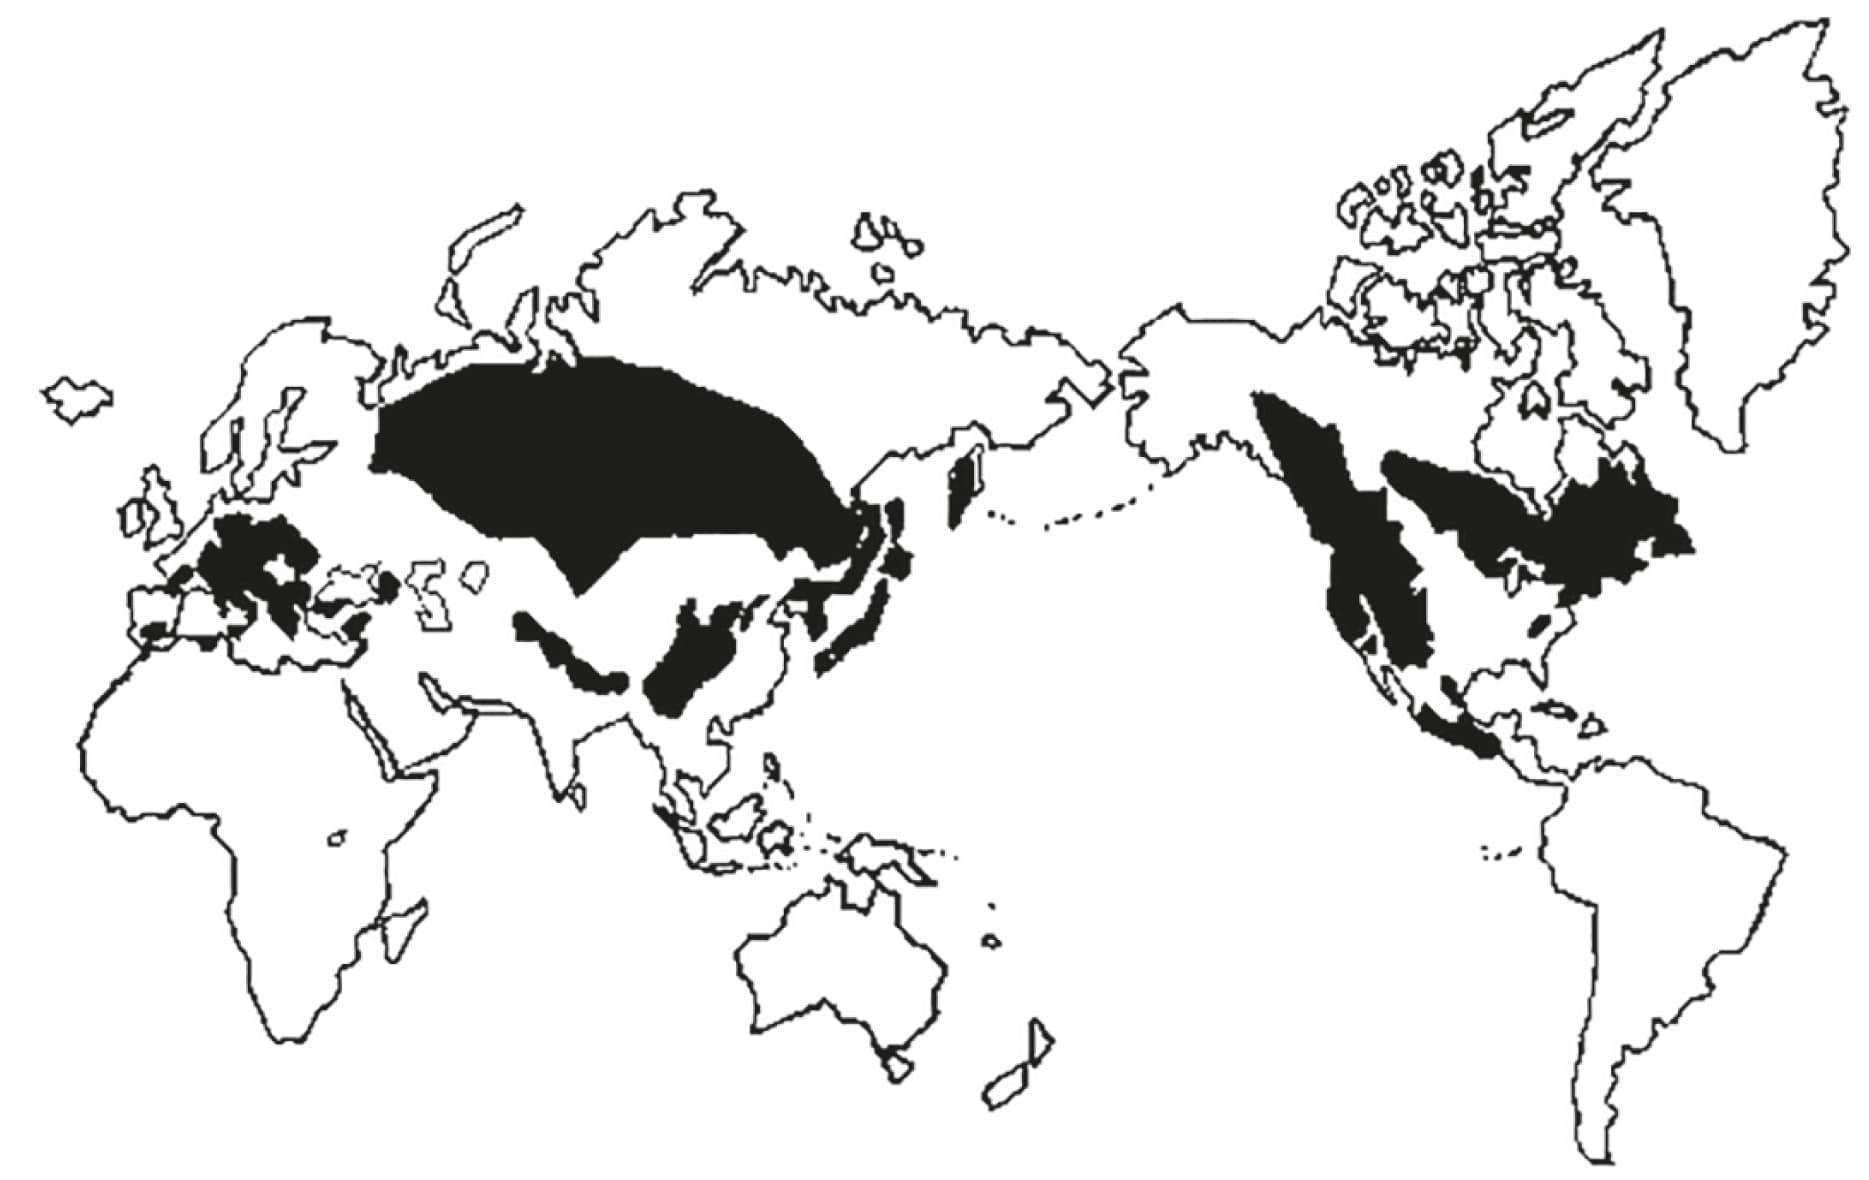 Range of Abies (after Farjon, 1990).